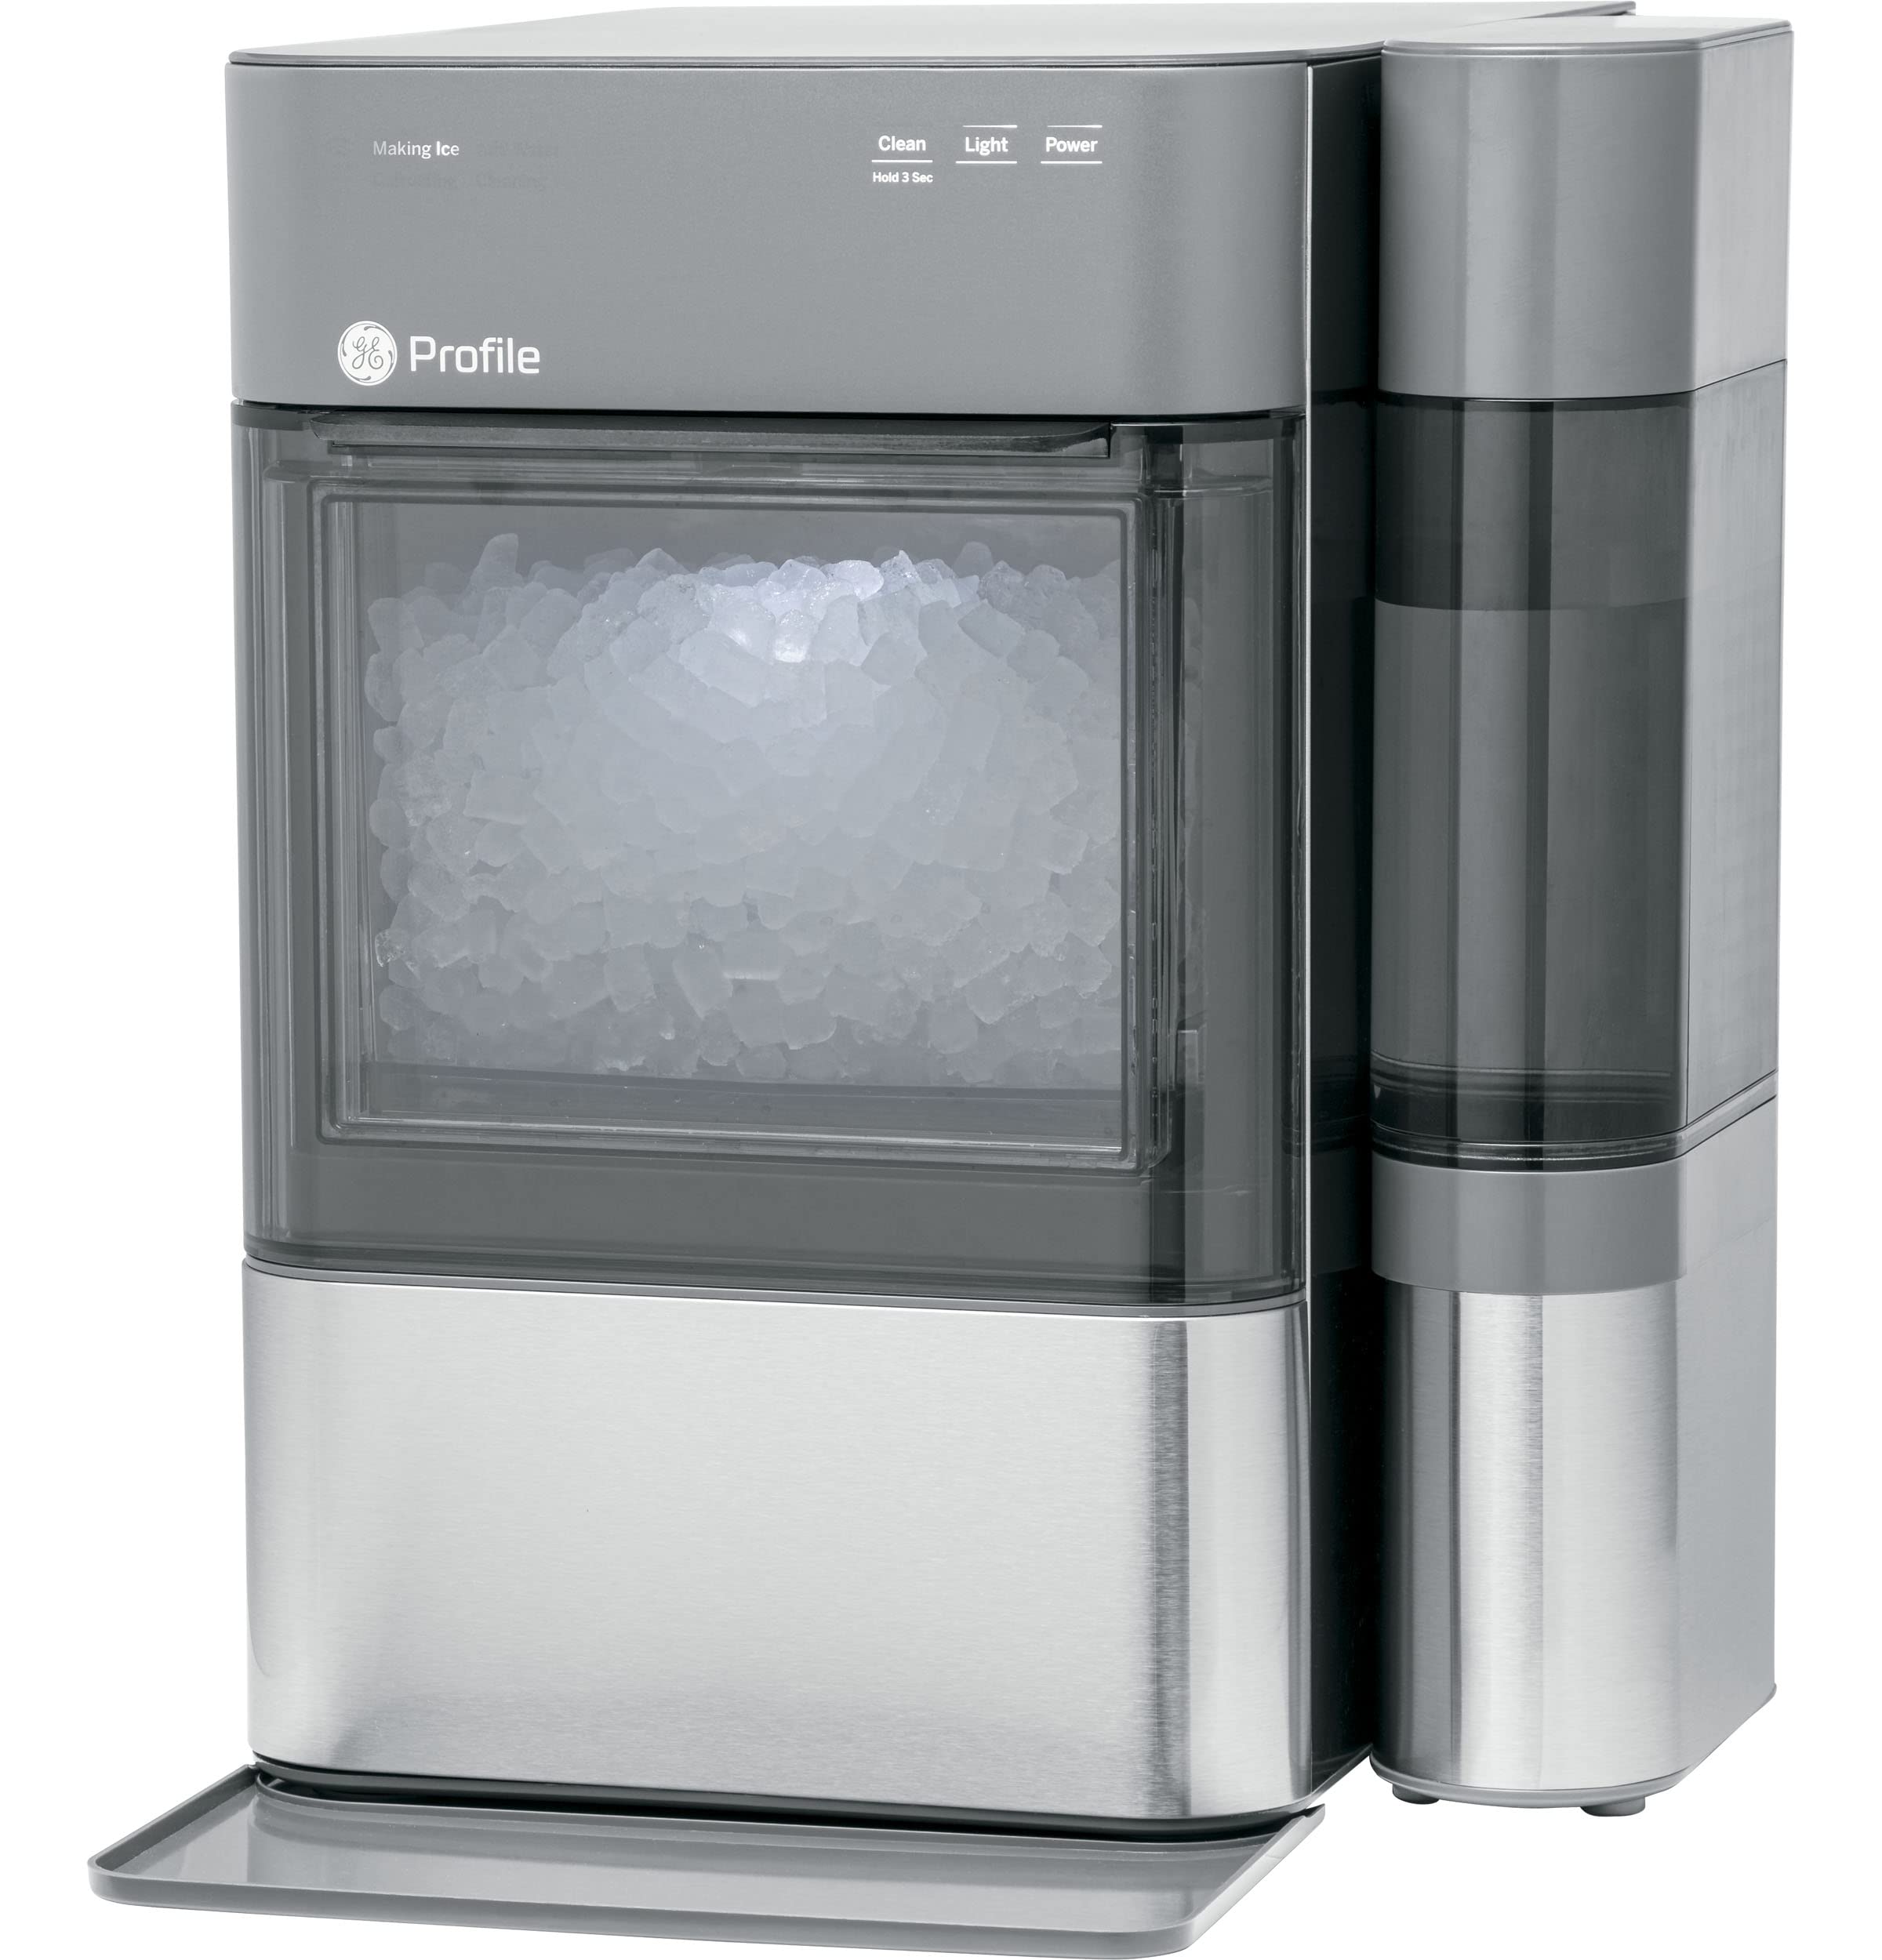 GE Ópalo 2.0 | Máquina para hacer hielo Nugt de encimera con tanque lateral | Máquina de hielo con conectividad WiFi | Esenciales de cocina para el hogar intelinte | Acero inoxidable